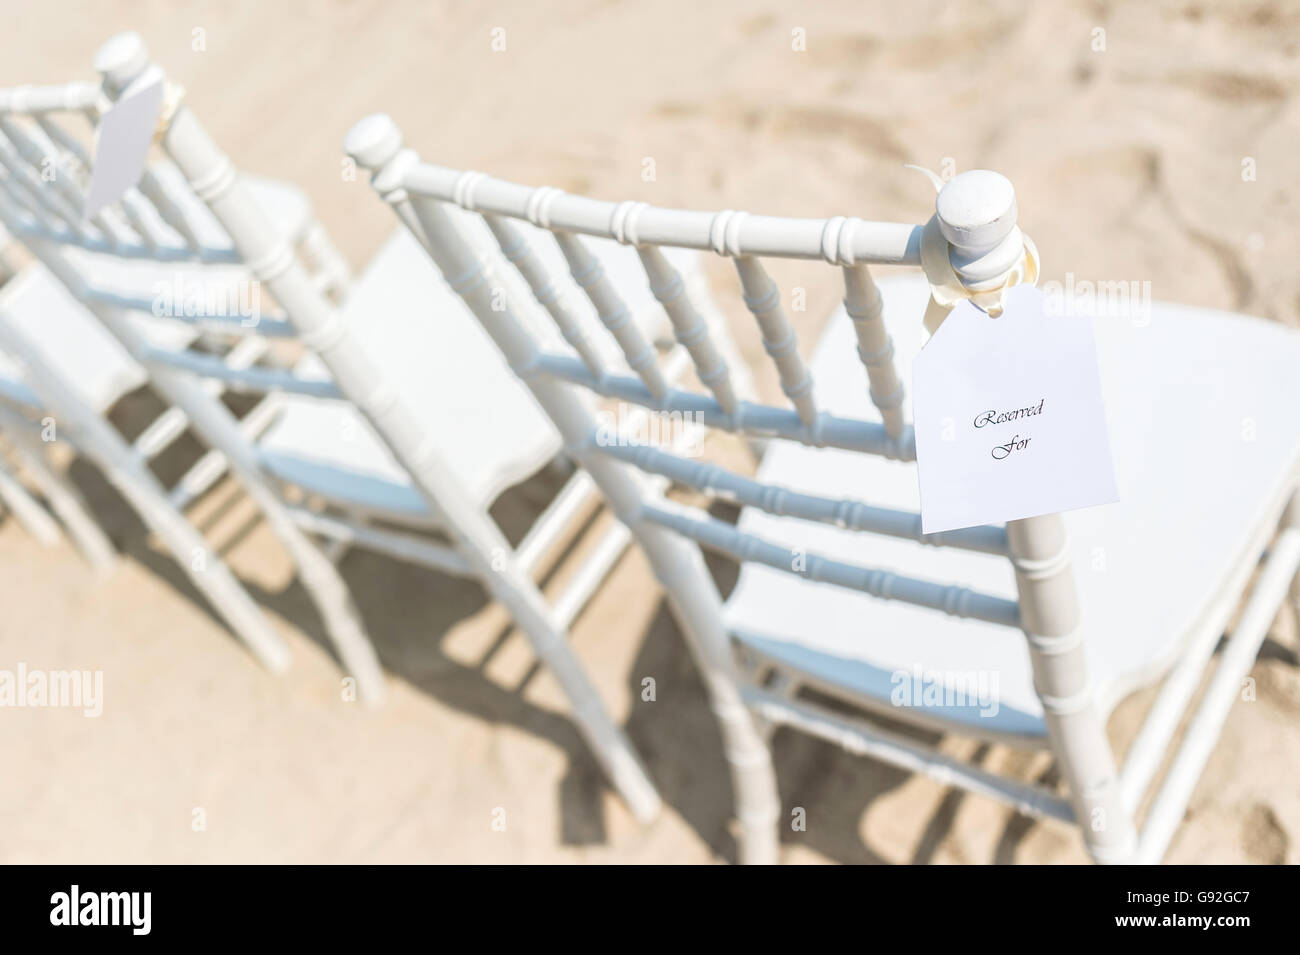 Des chaises disposés sur la plage de sable blanc pour mariage, réservés, selective focus Banque D'Images